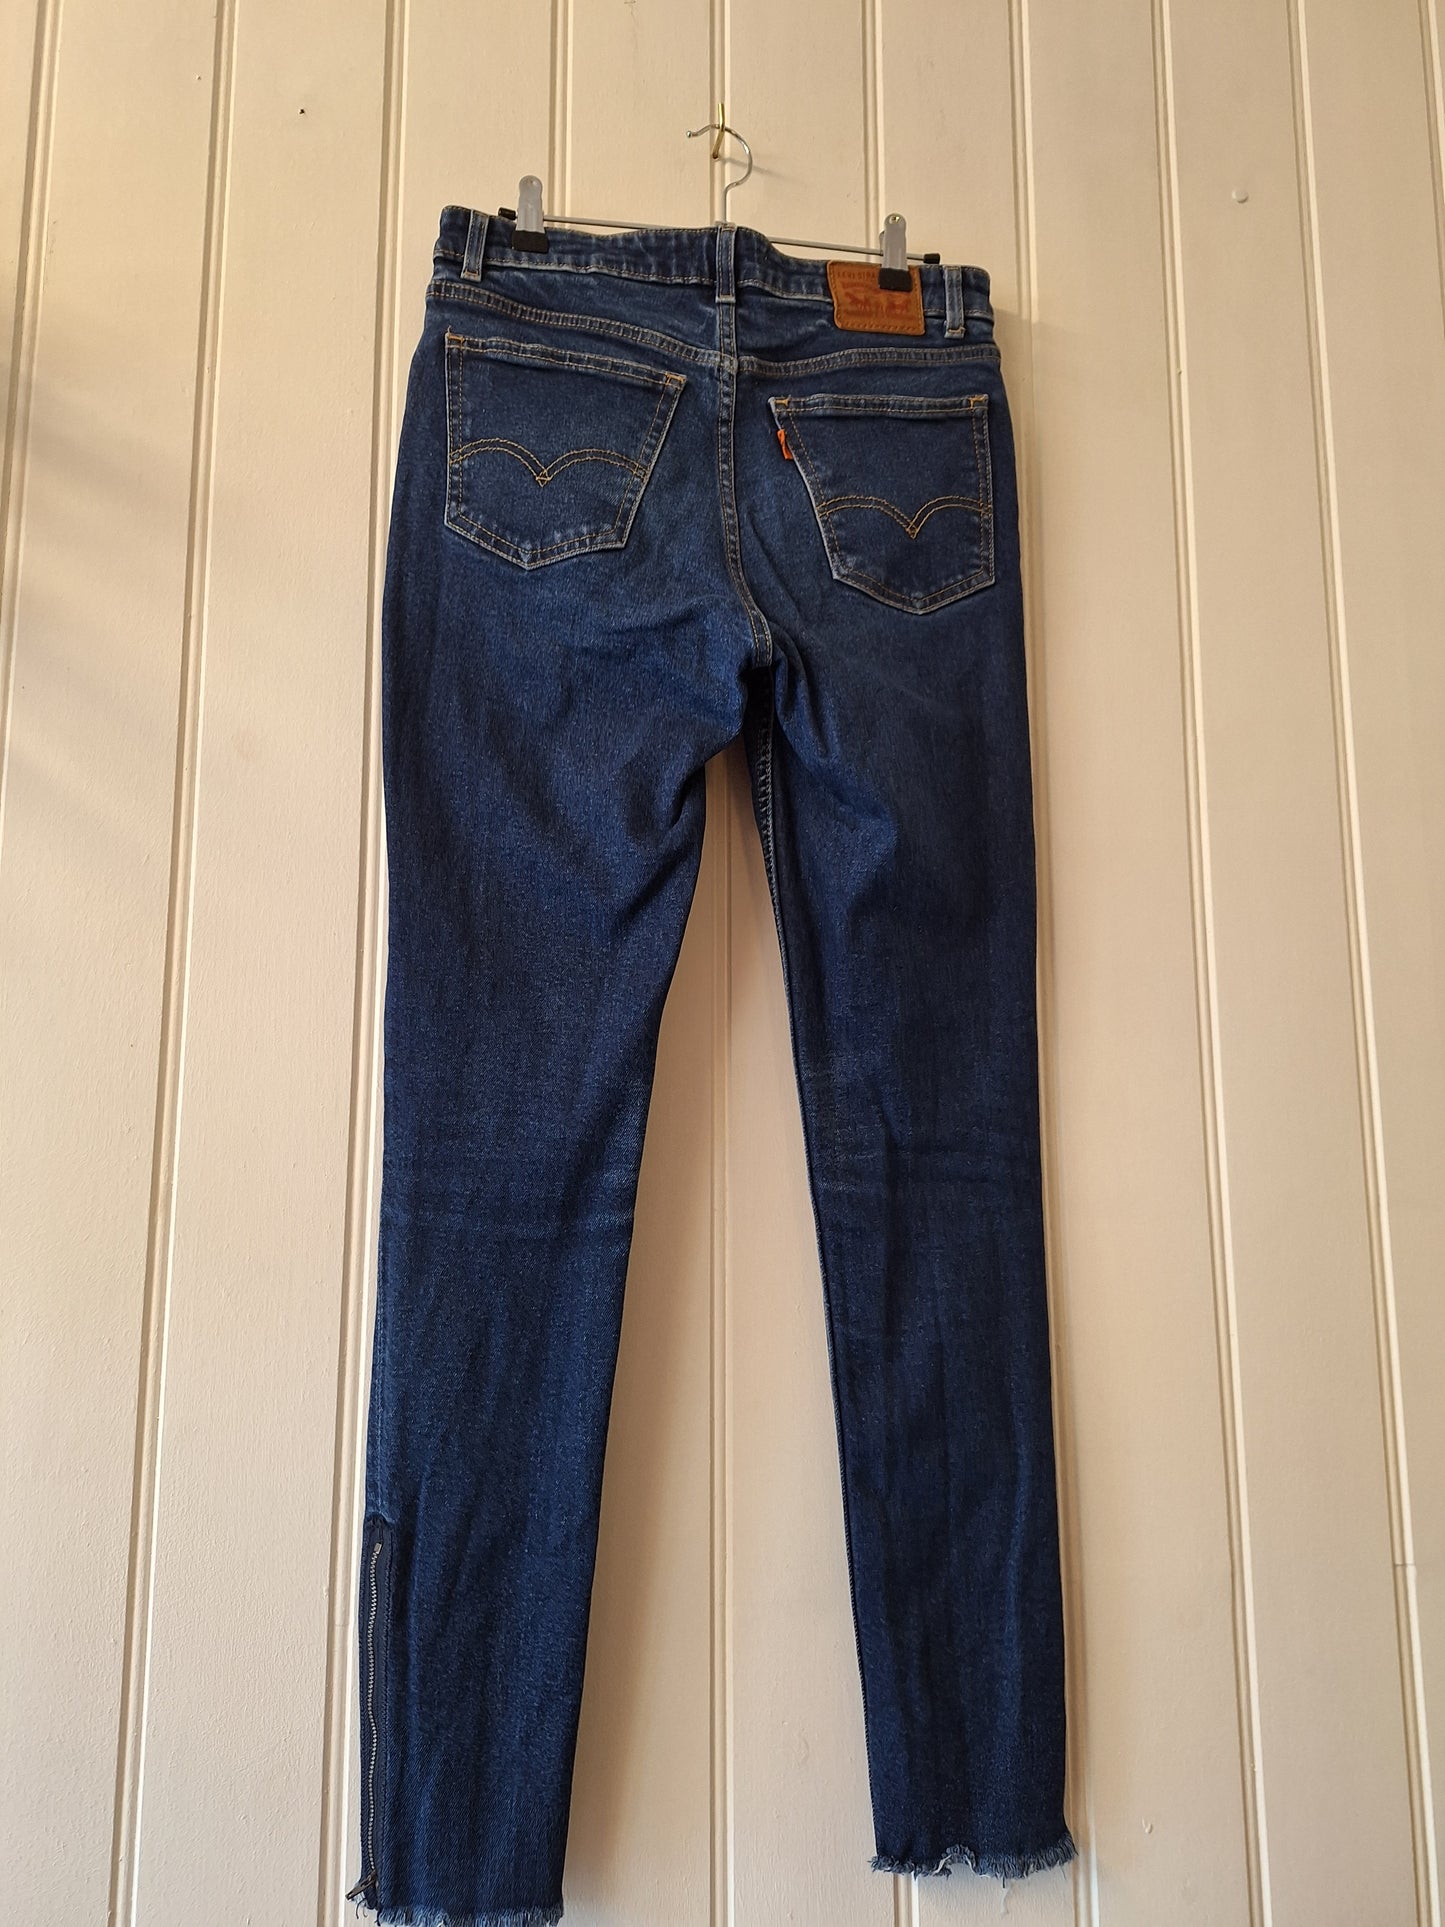 LEVI 721 skinny jeans W 28